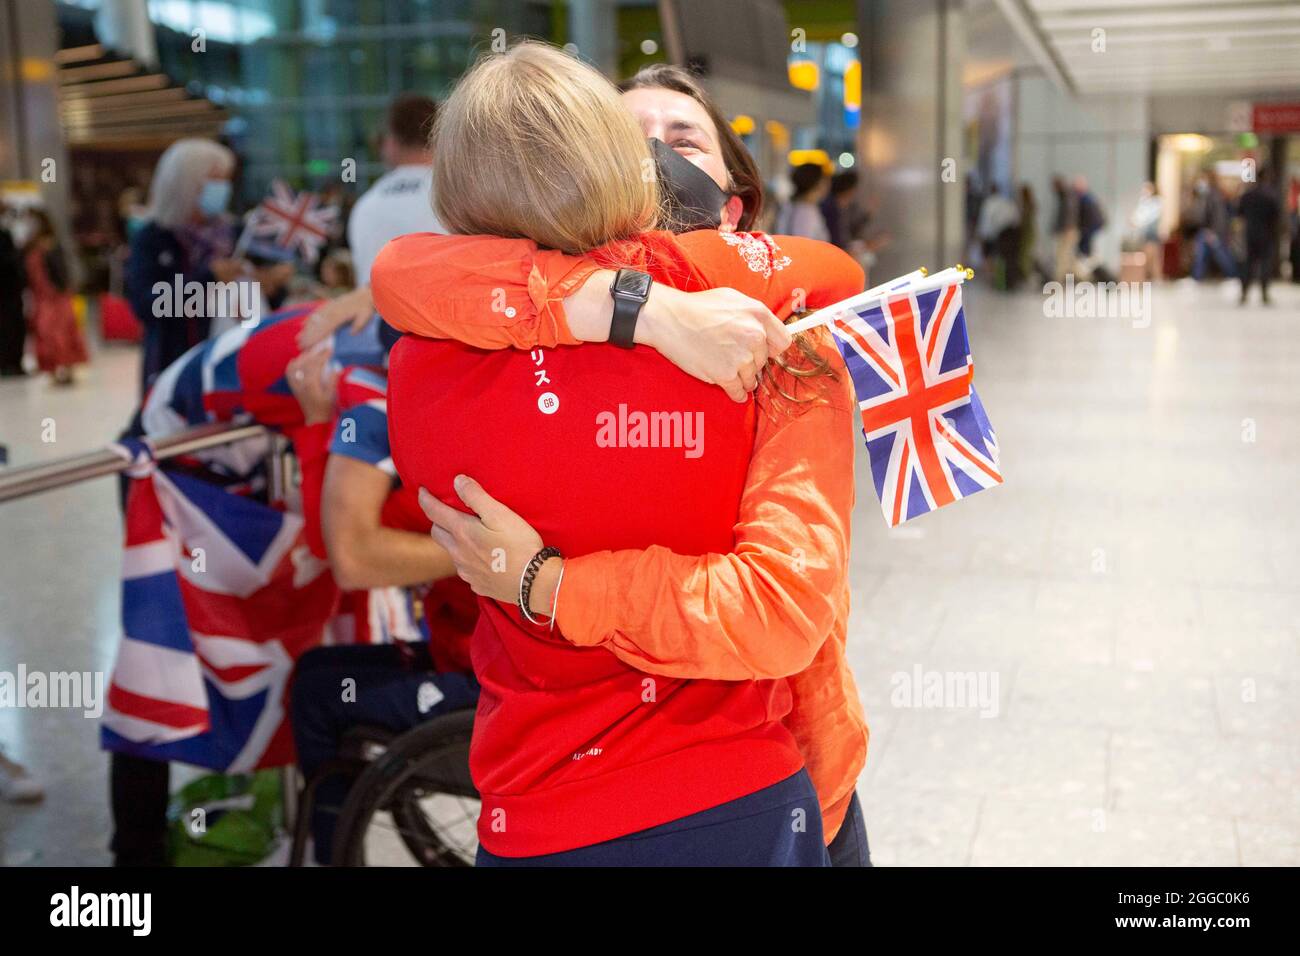 Die Goldmedaillengewinnerin Erin Kennedy wird von ihren Freunden begrüßt, als sie von den Paralympischen Spielen 2020 in Tokio am Flughafen London Heathrow ankommt. Bilddatum: Montag, 30. August 2021. Stockfoto